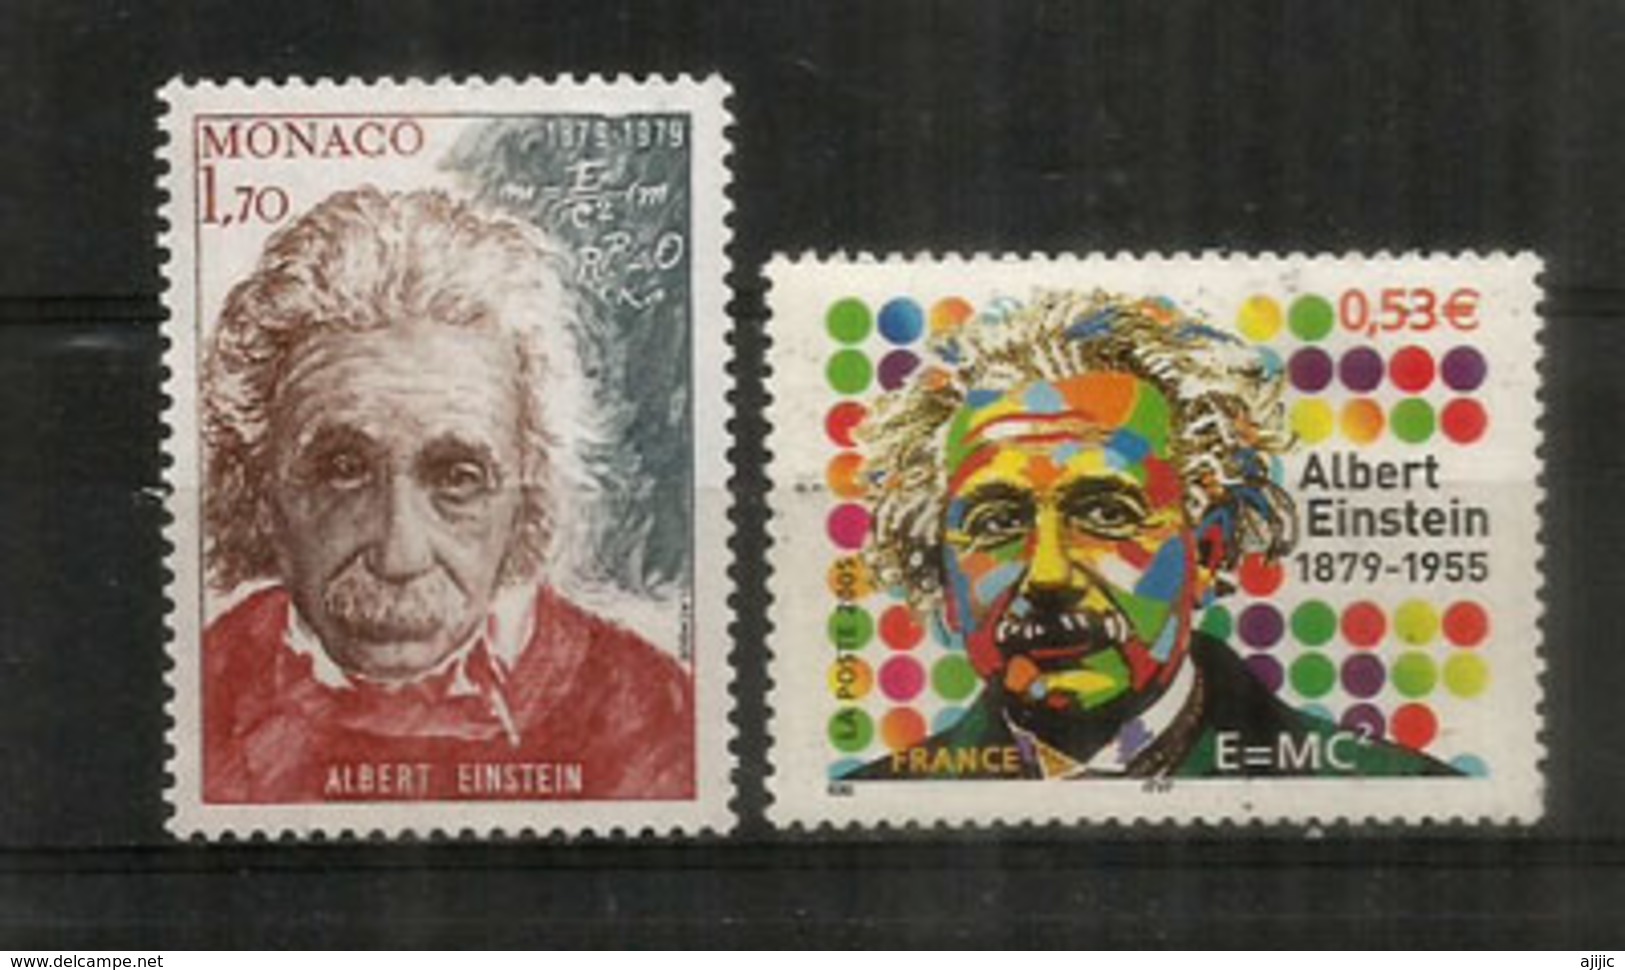 Hommage à Albert Einstein.Prix Nobel Physique 1921.  2 T-p Neufs ** Monaco.France - Albert Einstein